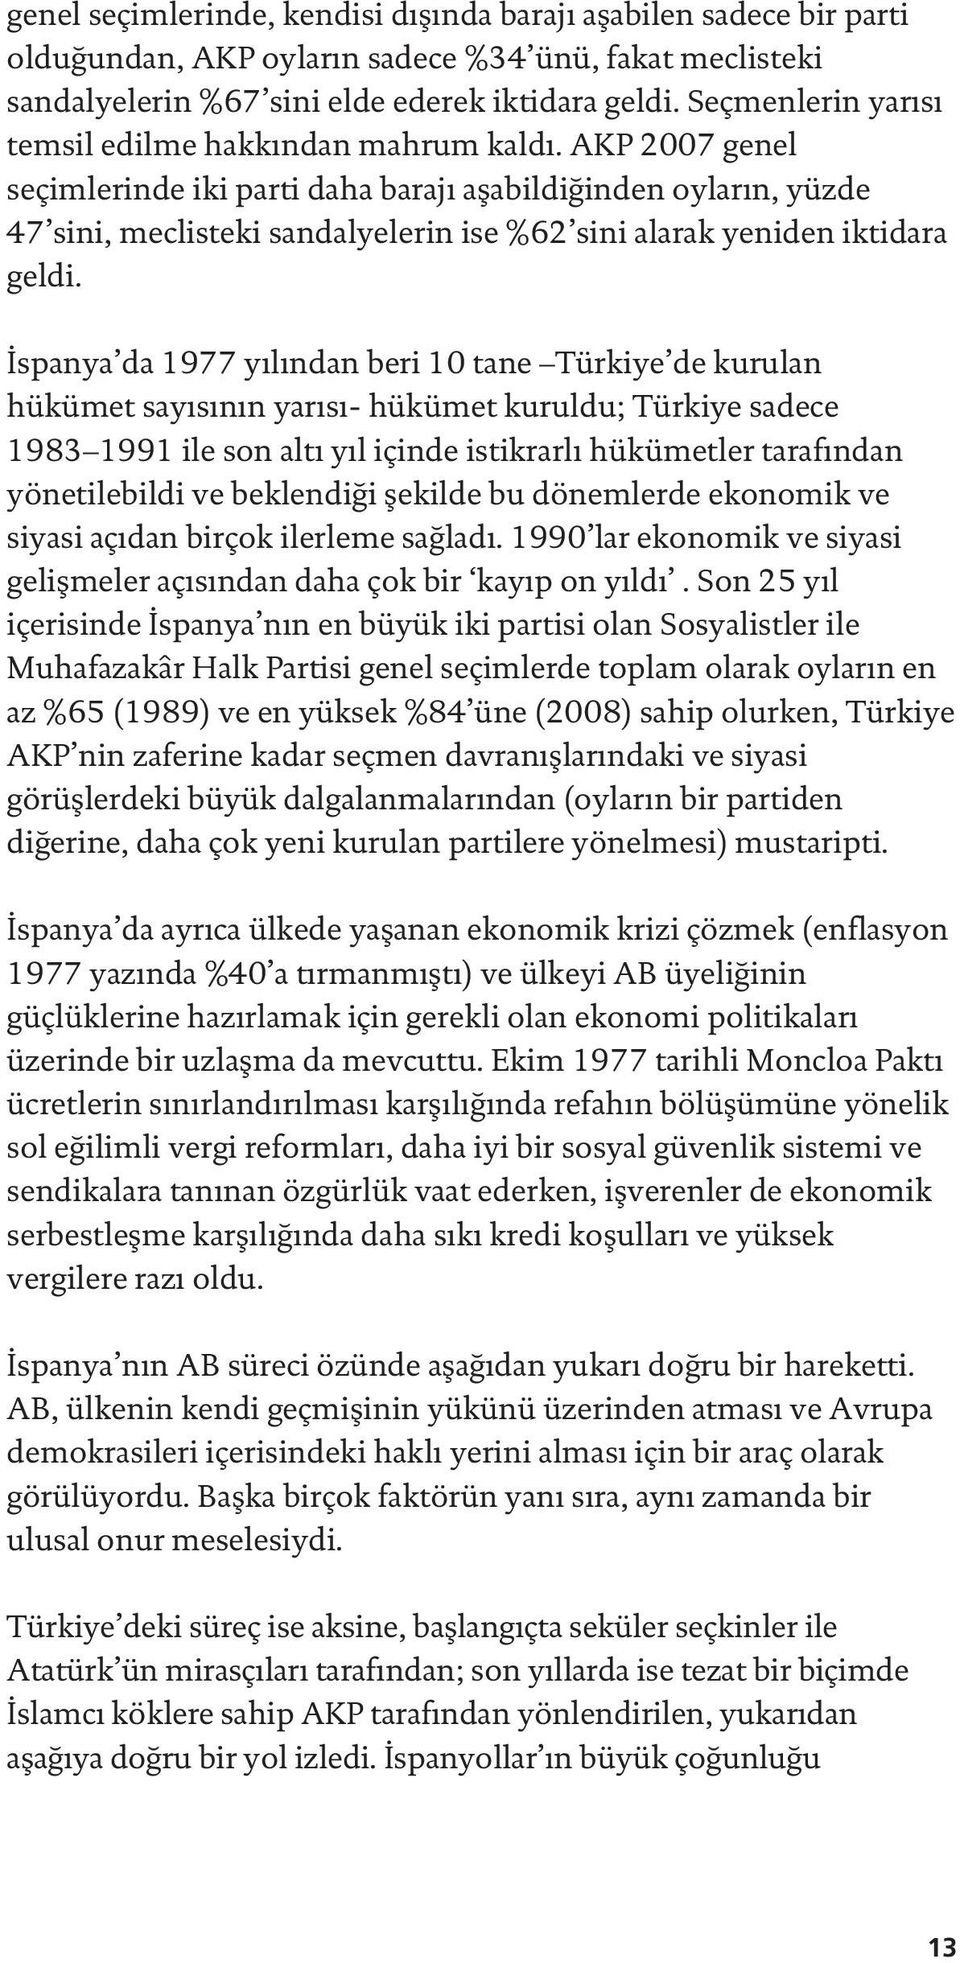 AKP 2007 genel seçimlerinde iki parti daha barajı aşabildiğinden oyların, yüzde 47 sini, meclisteki sandalyelerin ise %62 sini alarak yeniden iktidara geldi.